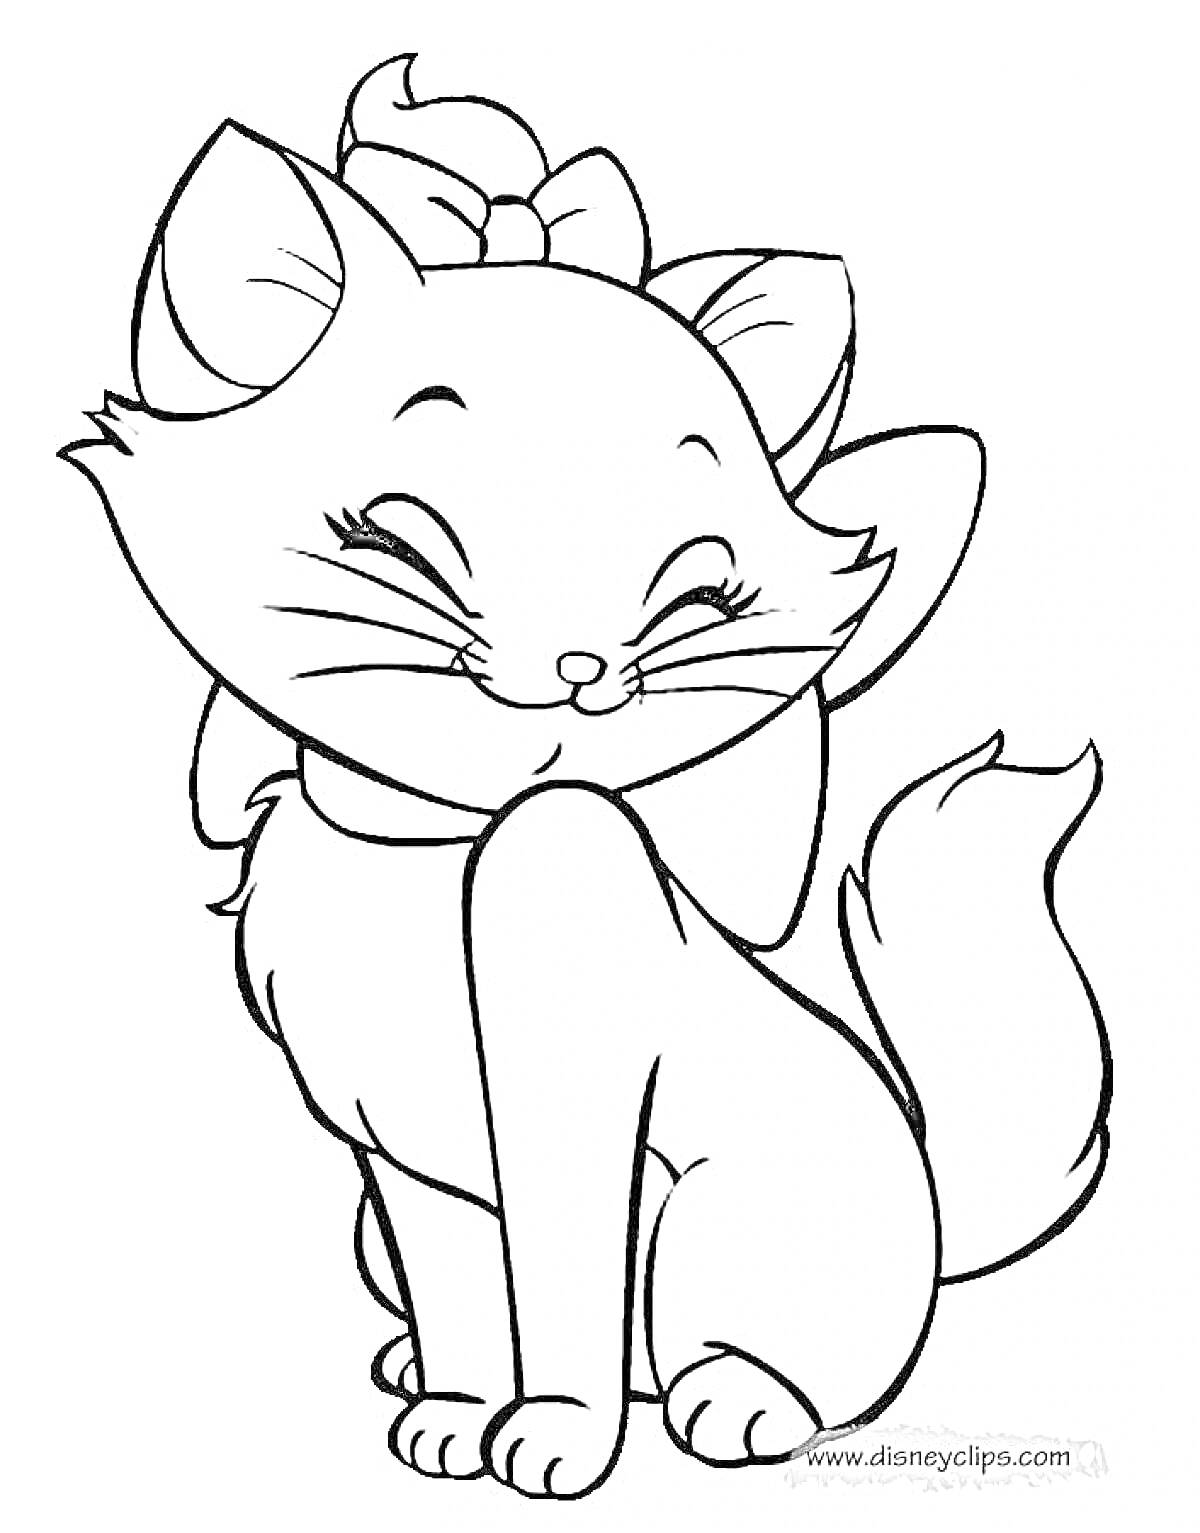 Раскраска Кошка с бантом на голове и завитым хвостом, улыбающаяся